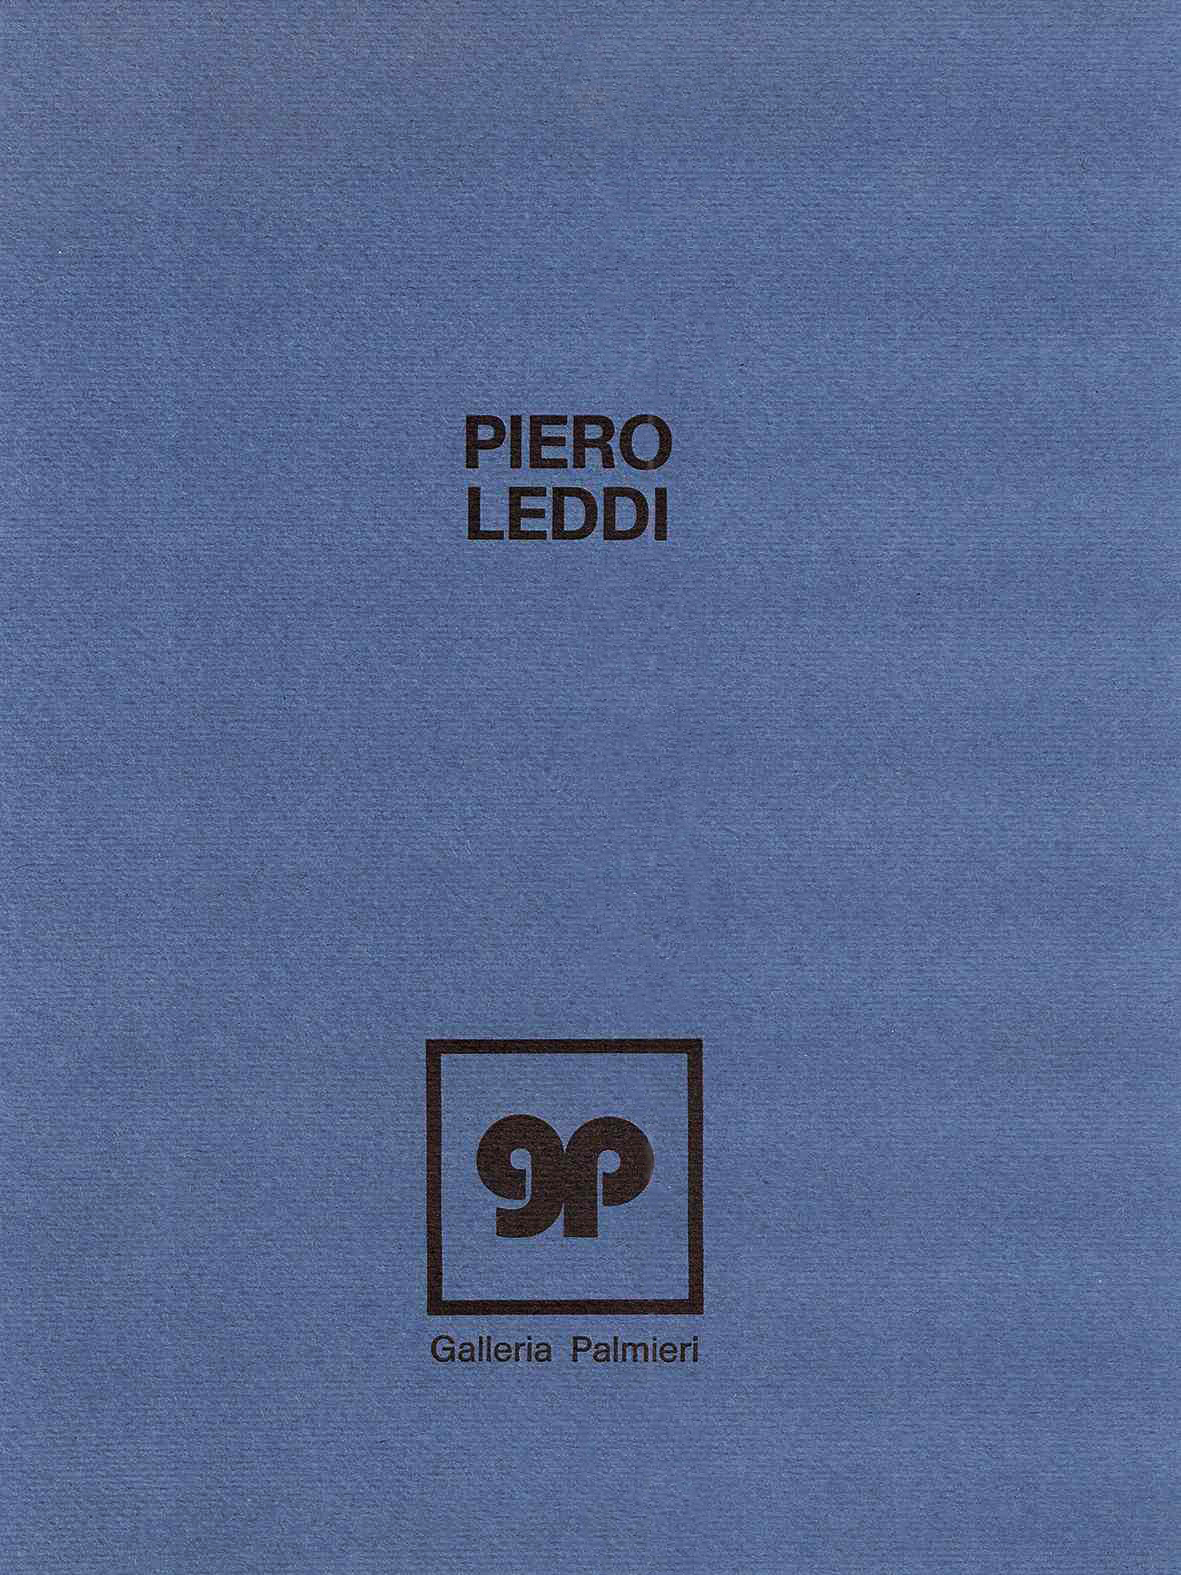 Piero Leddi